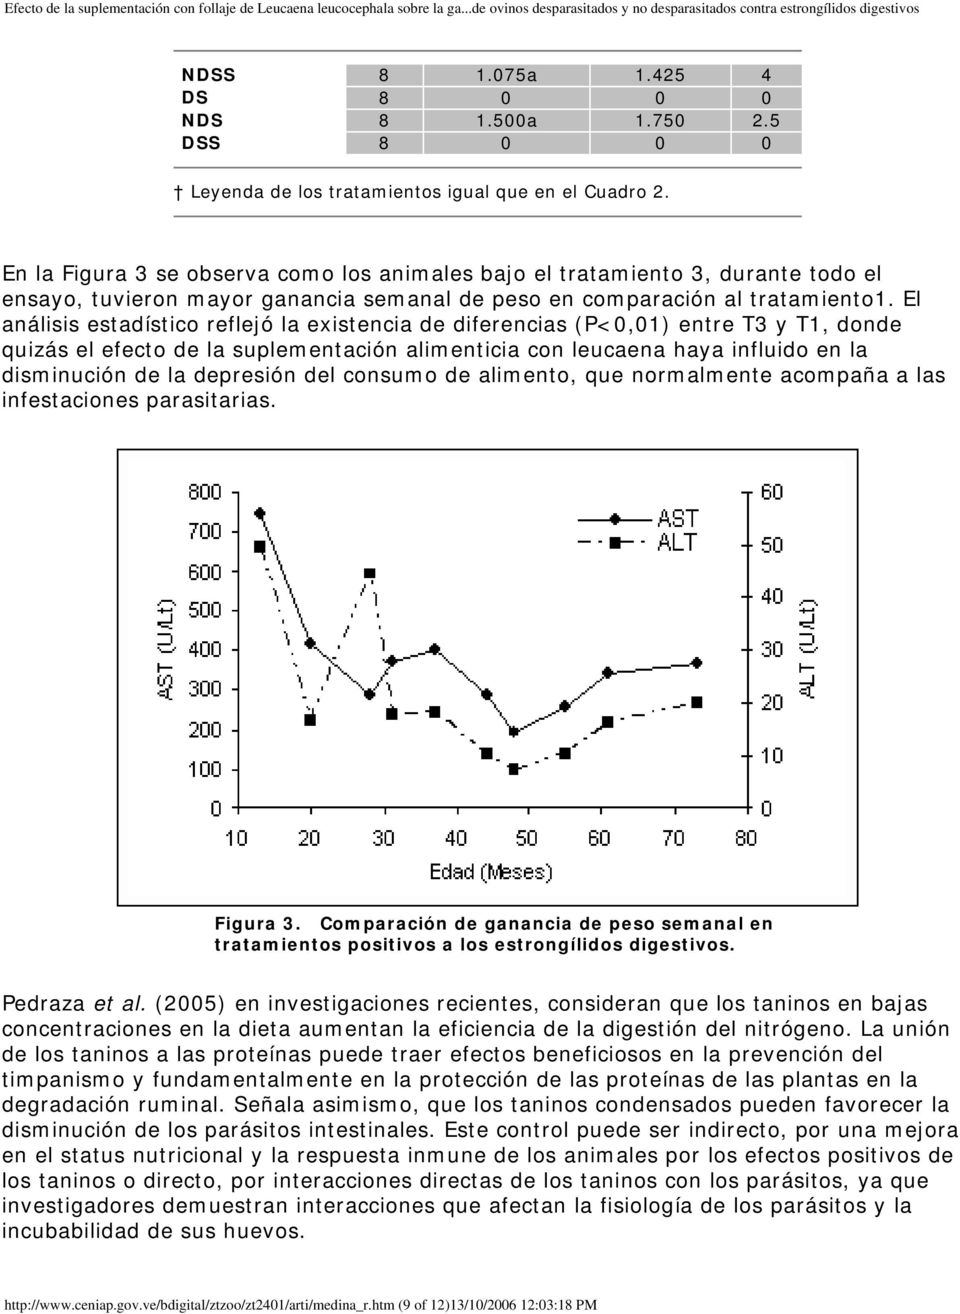 El análisis estadístico reflejó la existencia de diferencias (P<0,01) entre T3 y T1, donde quizás el efecto de la suplementación alimenticia con leucaena haya influido en la disminución de la